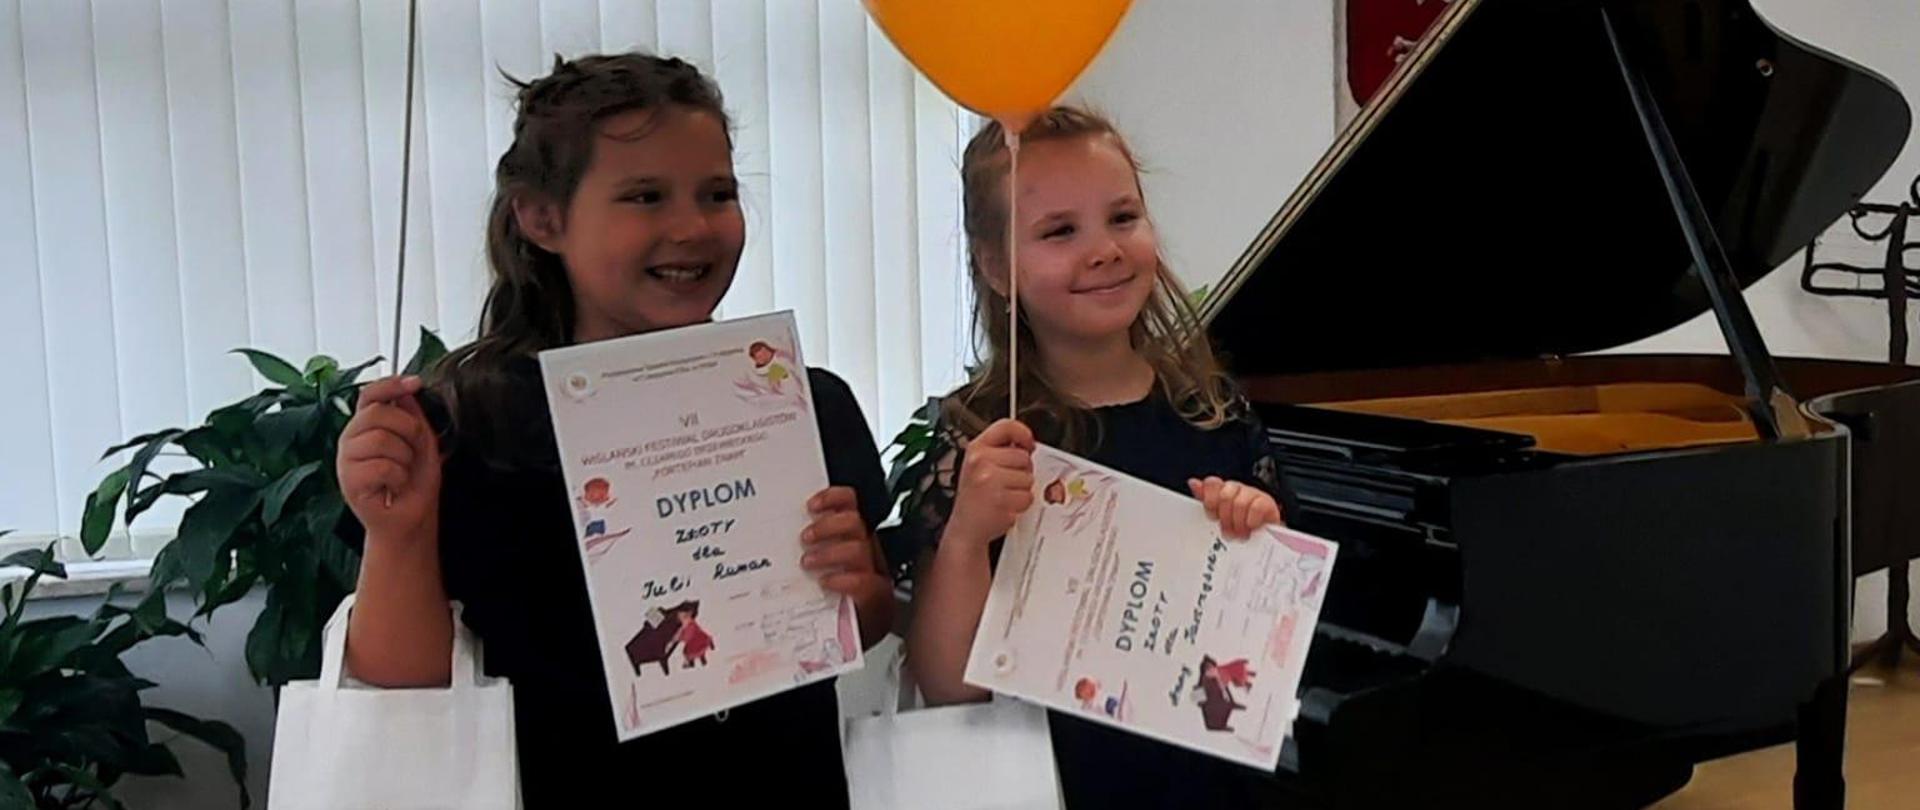 Dwie dziewczynki stoją na scenie przed fortepianem, w rękach trzymają dyplomy, upominki i balony.